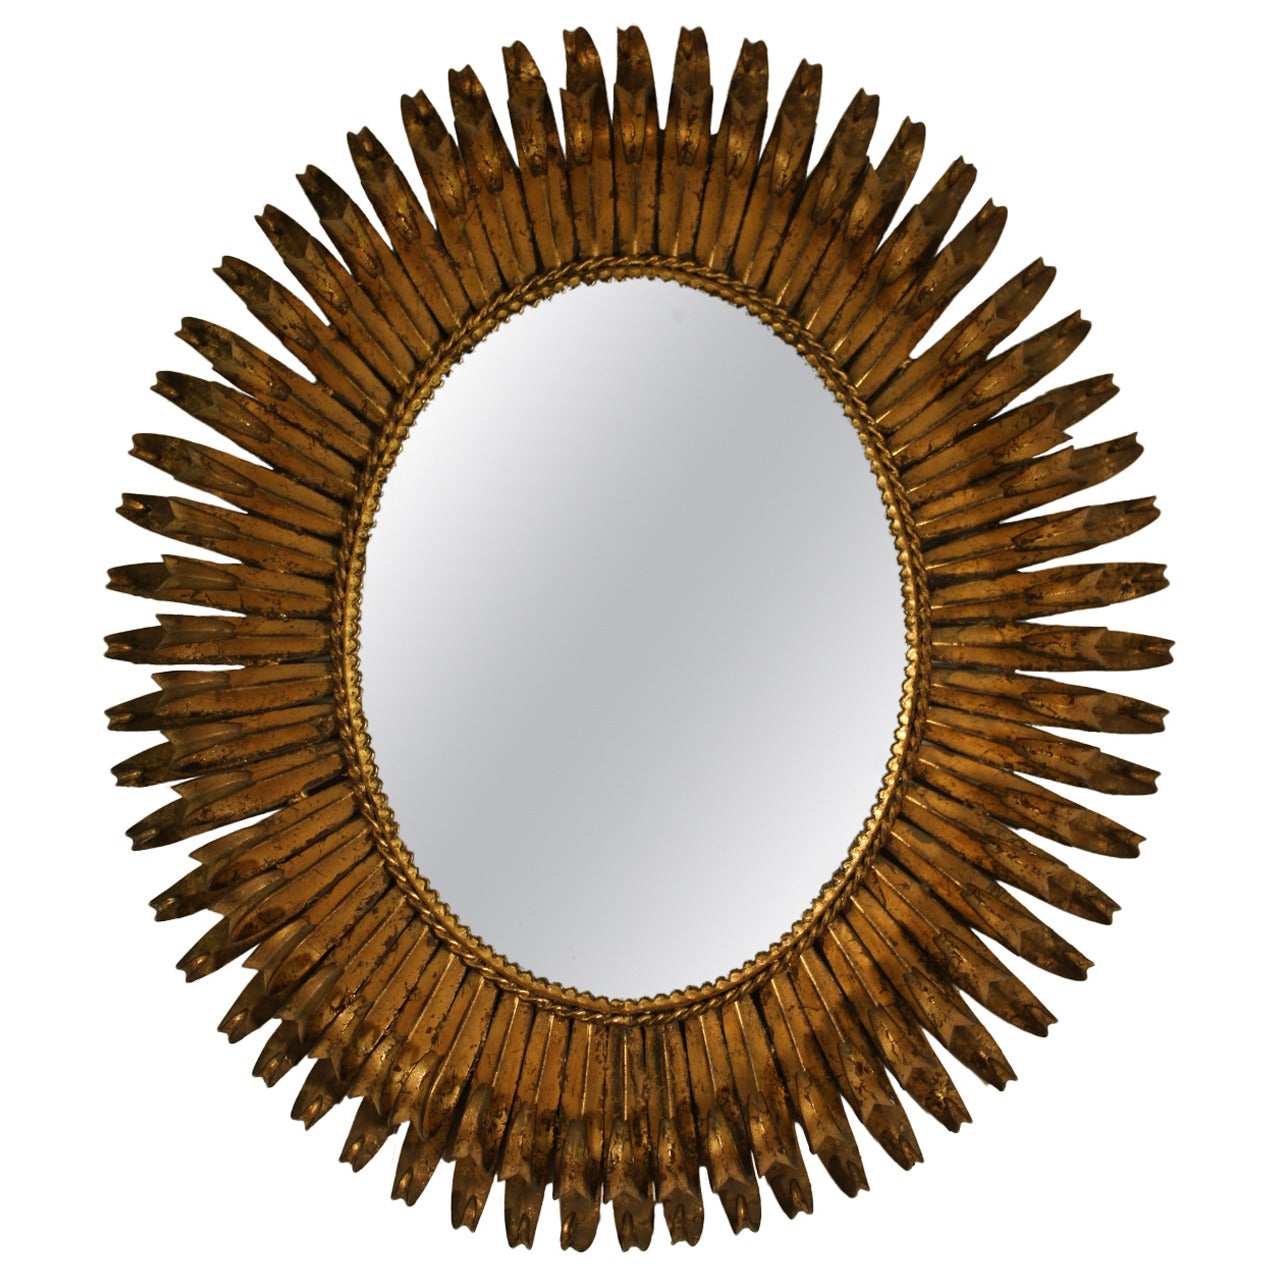 Gorgeus Spanish Brutalist Oval Sunburst Mirror